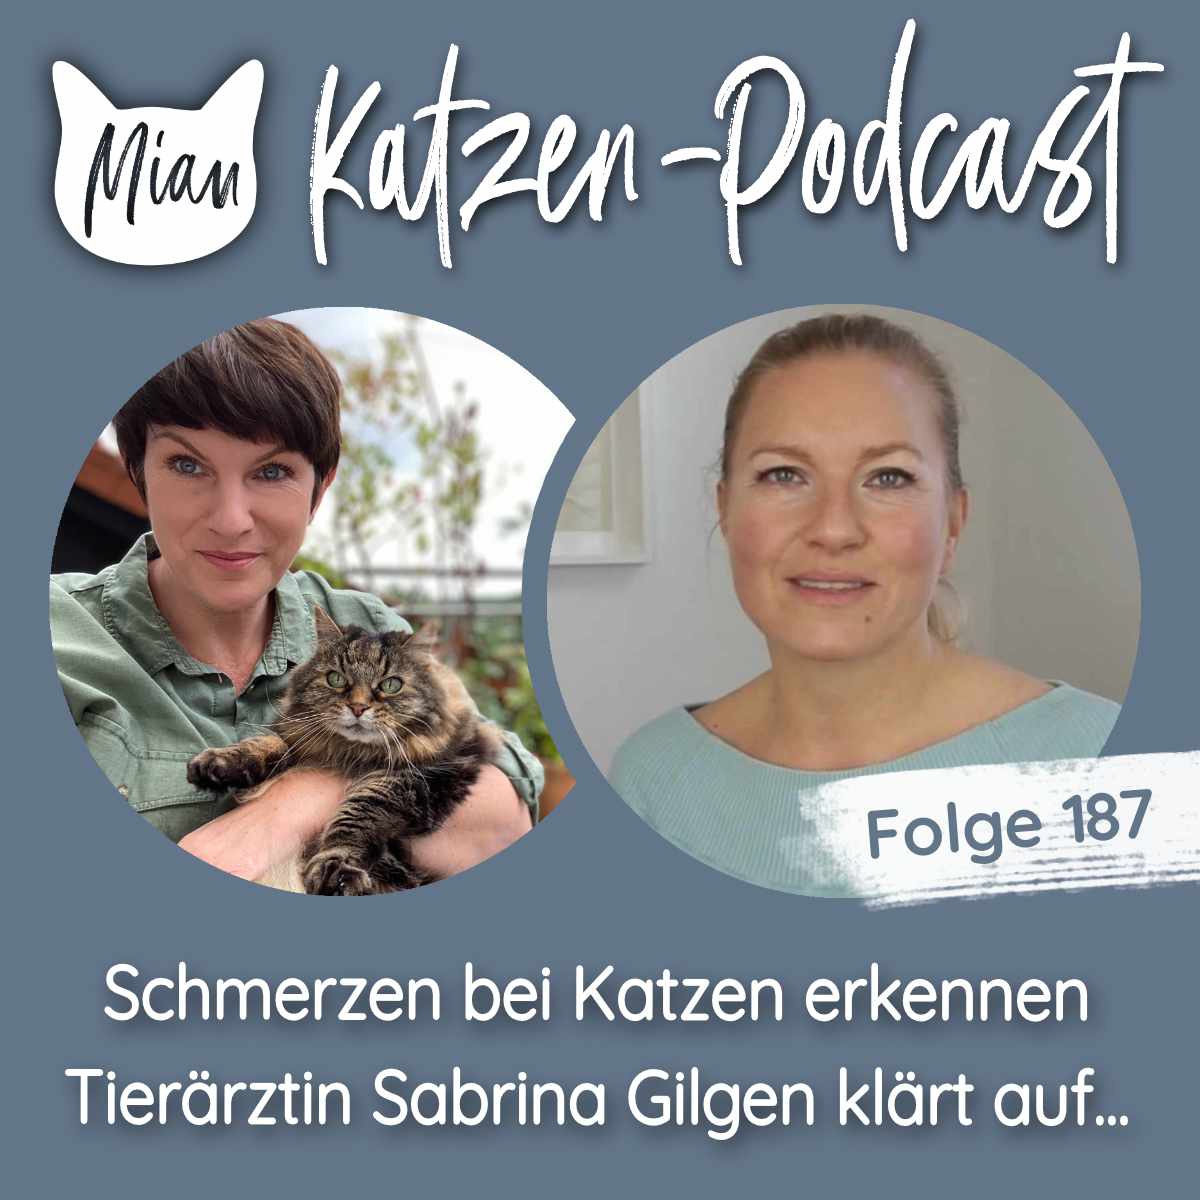 Schmerzen bei Katzen erkennen -  Tierärztin Sabrina Gilgen klärt auf...